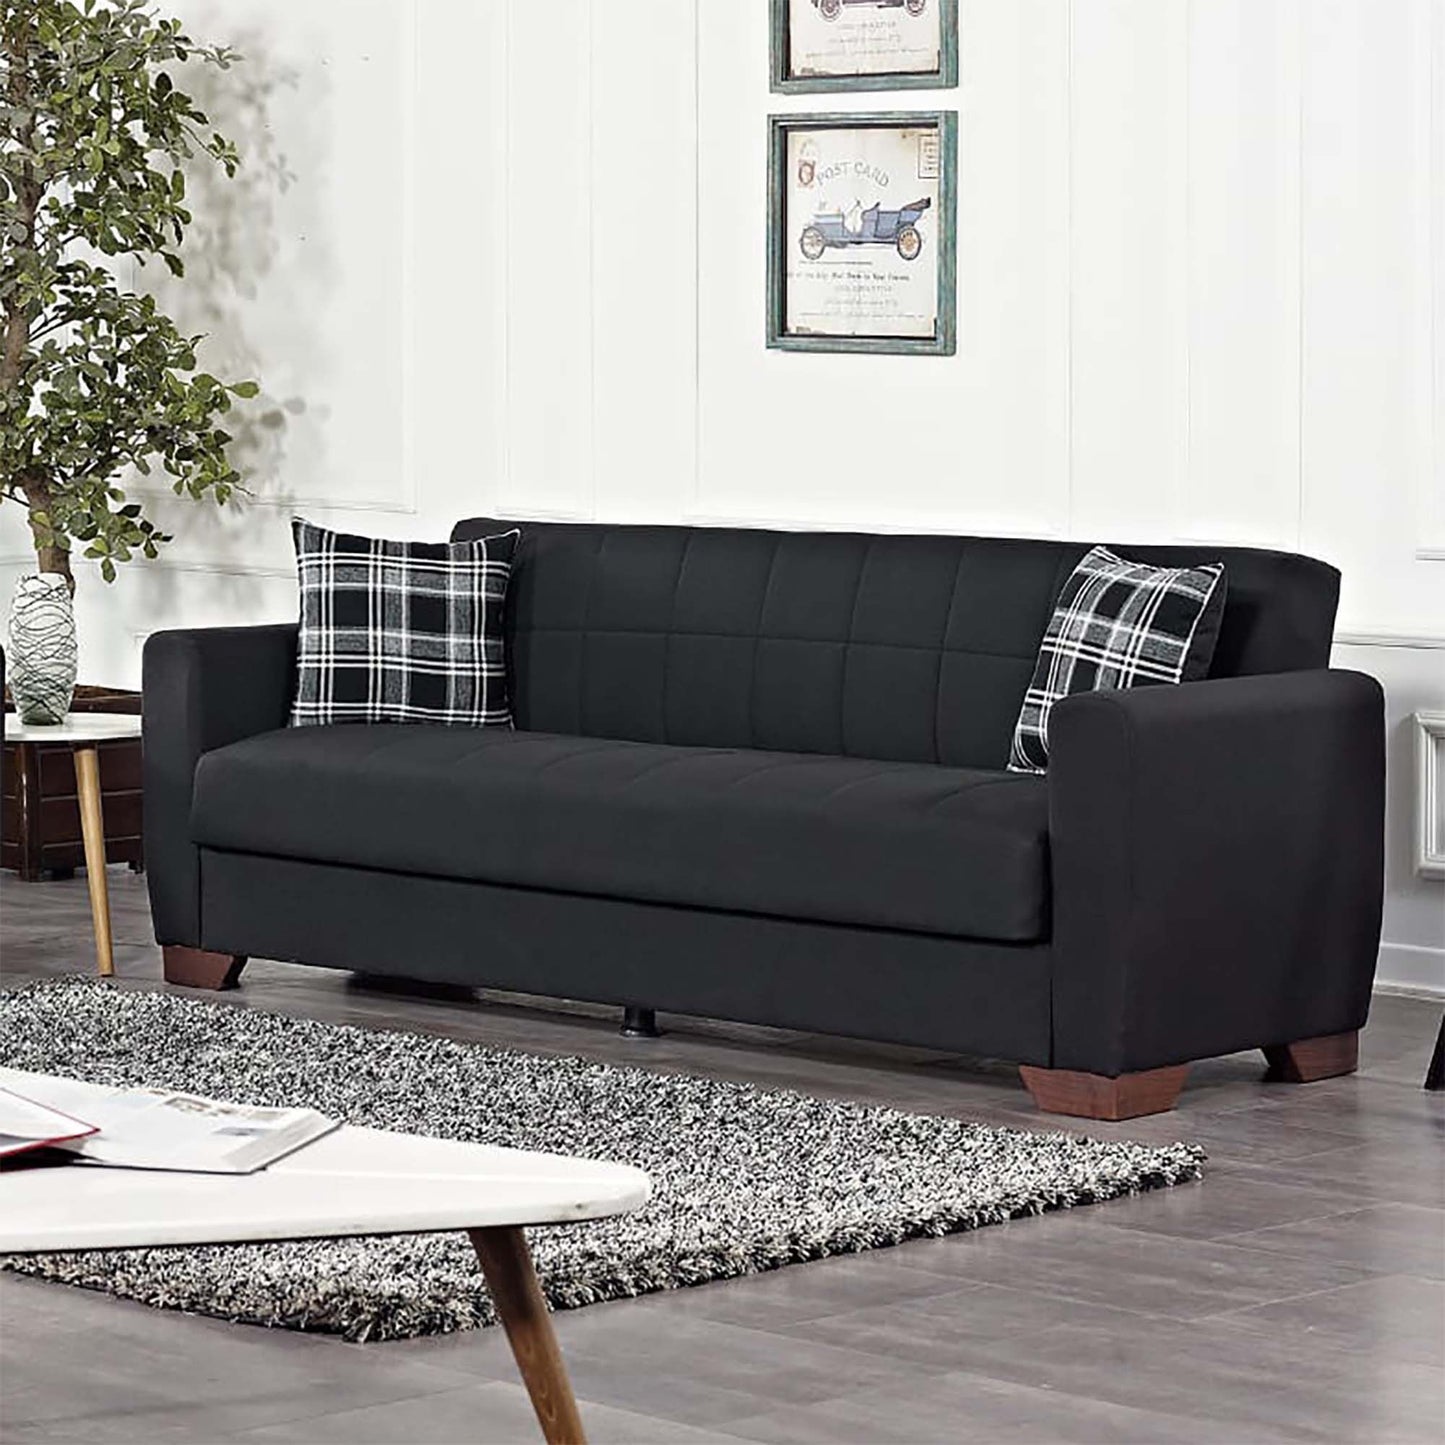 Ottomanson Barato - Convertible Sofa Bed With Storage